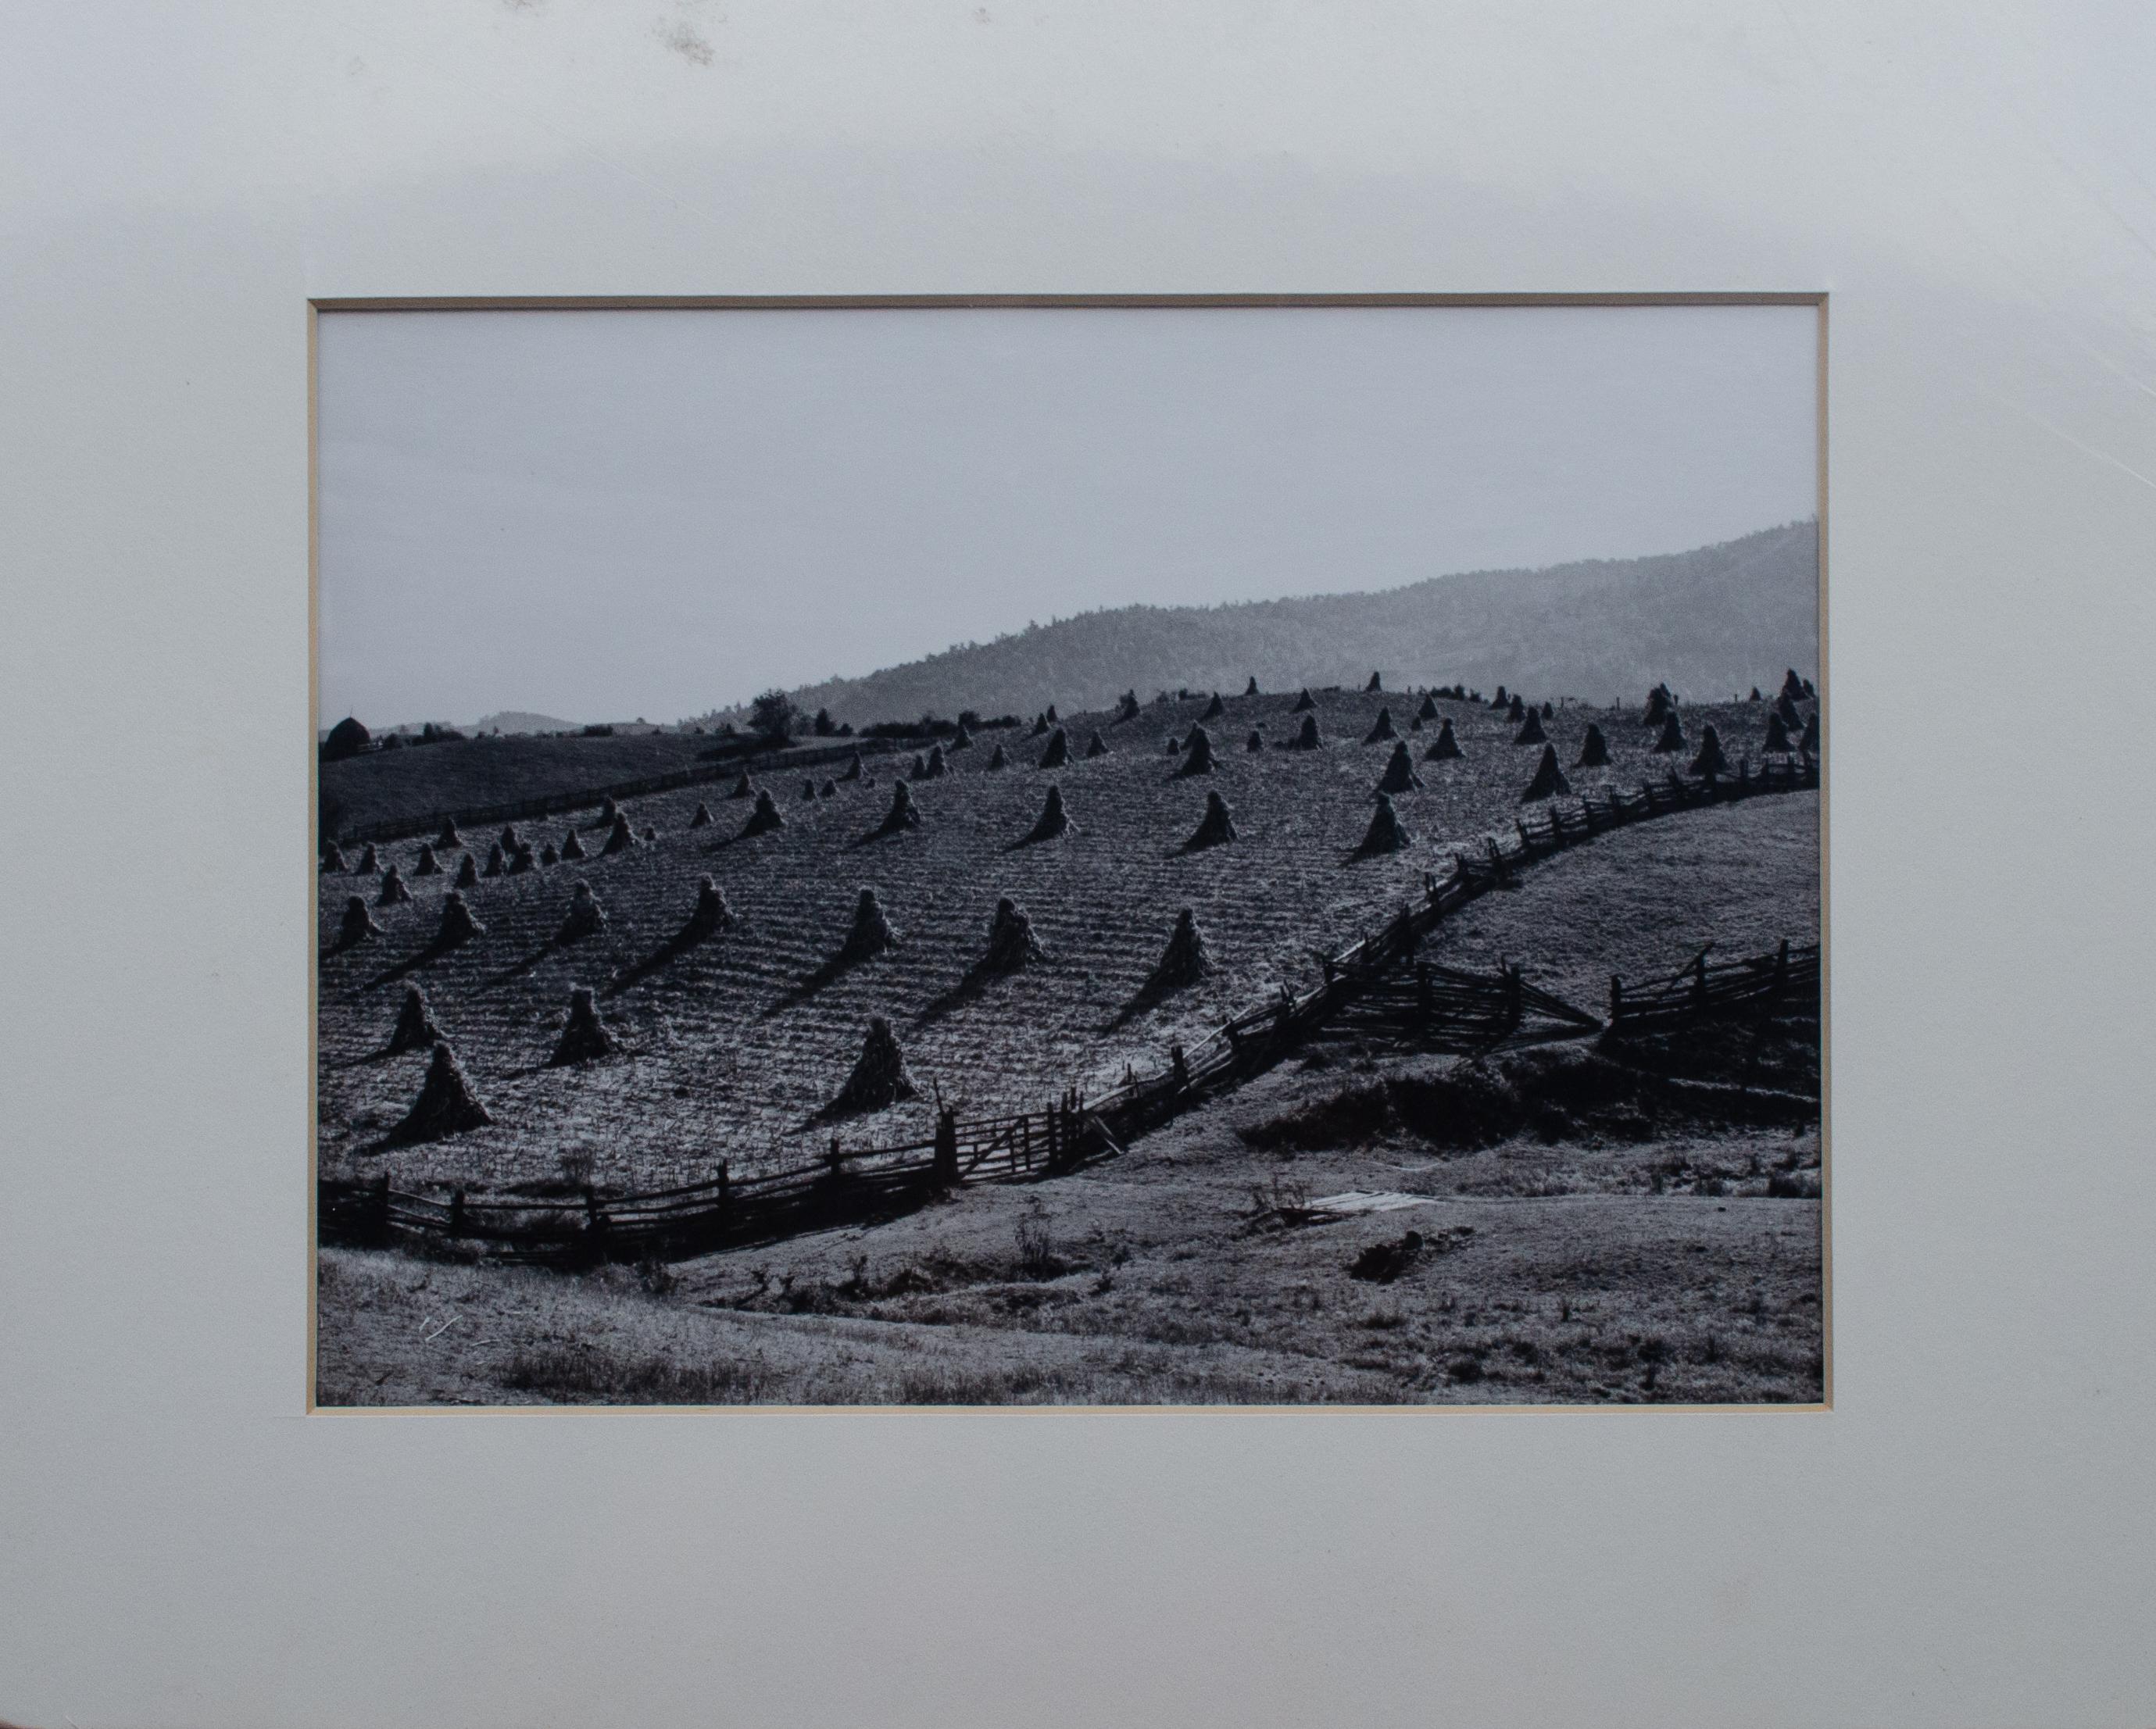 1. Arthur Rostein (Amerikaner, 1915-1985)
Ochsenschädel, 1936
Schwarz-Weiß-Fotografie von
7 1/4 x 7 1/4 in. 
Matte: 11 x 14 Zoll.

2. Marion Post Wolcott (Amerikanerin, 1910-1990)
Farmland in Virginia, 1940
Schwarz-Weiß-Fotografie von
7 x 9 1/2 in.